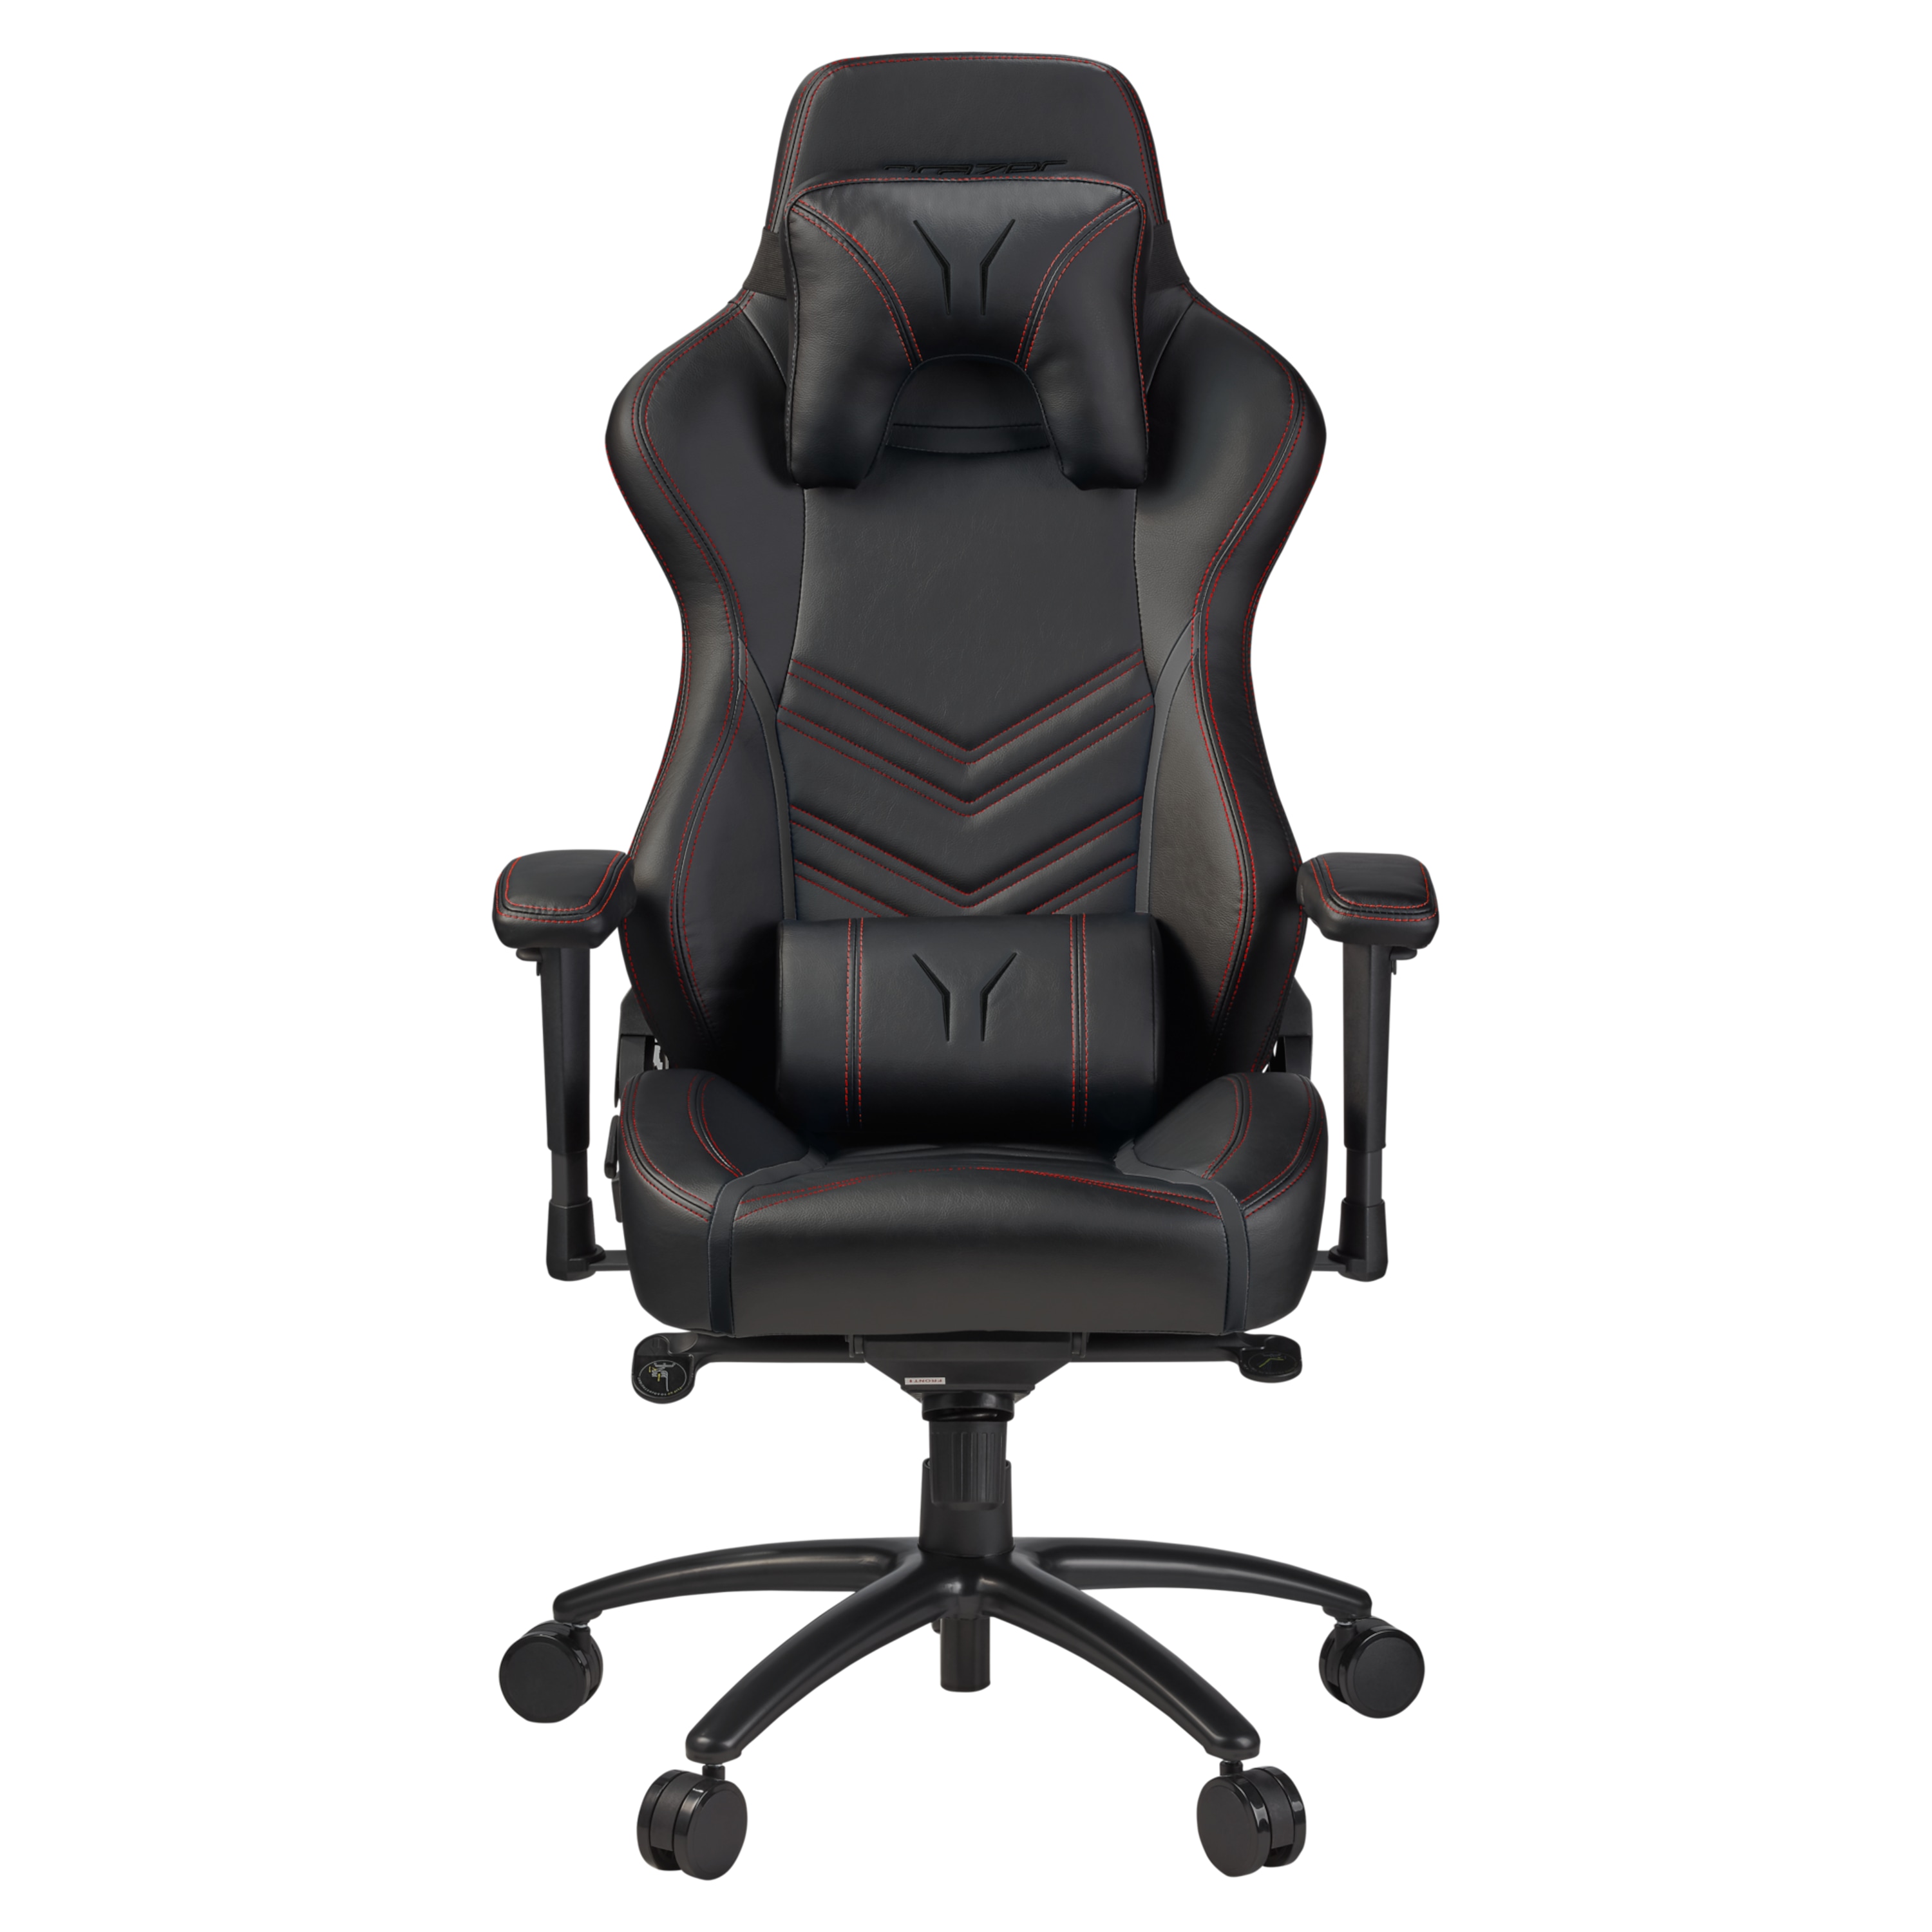 ERAZER® X89410 gaming stoel | stijlvol en comfortabel | sportieve look en hoogwaardige materialen | met 2 kussens voor de rug en het hoofd gebied